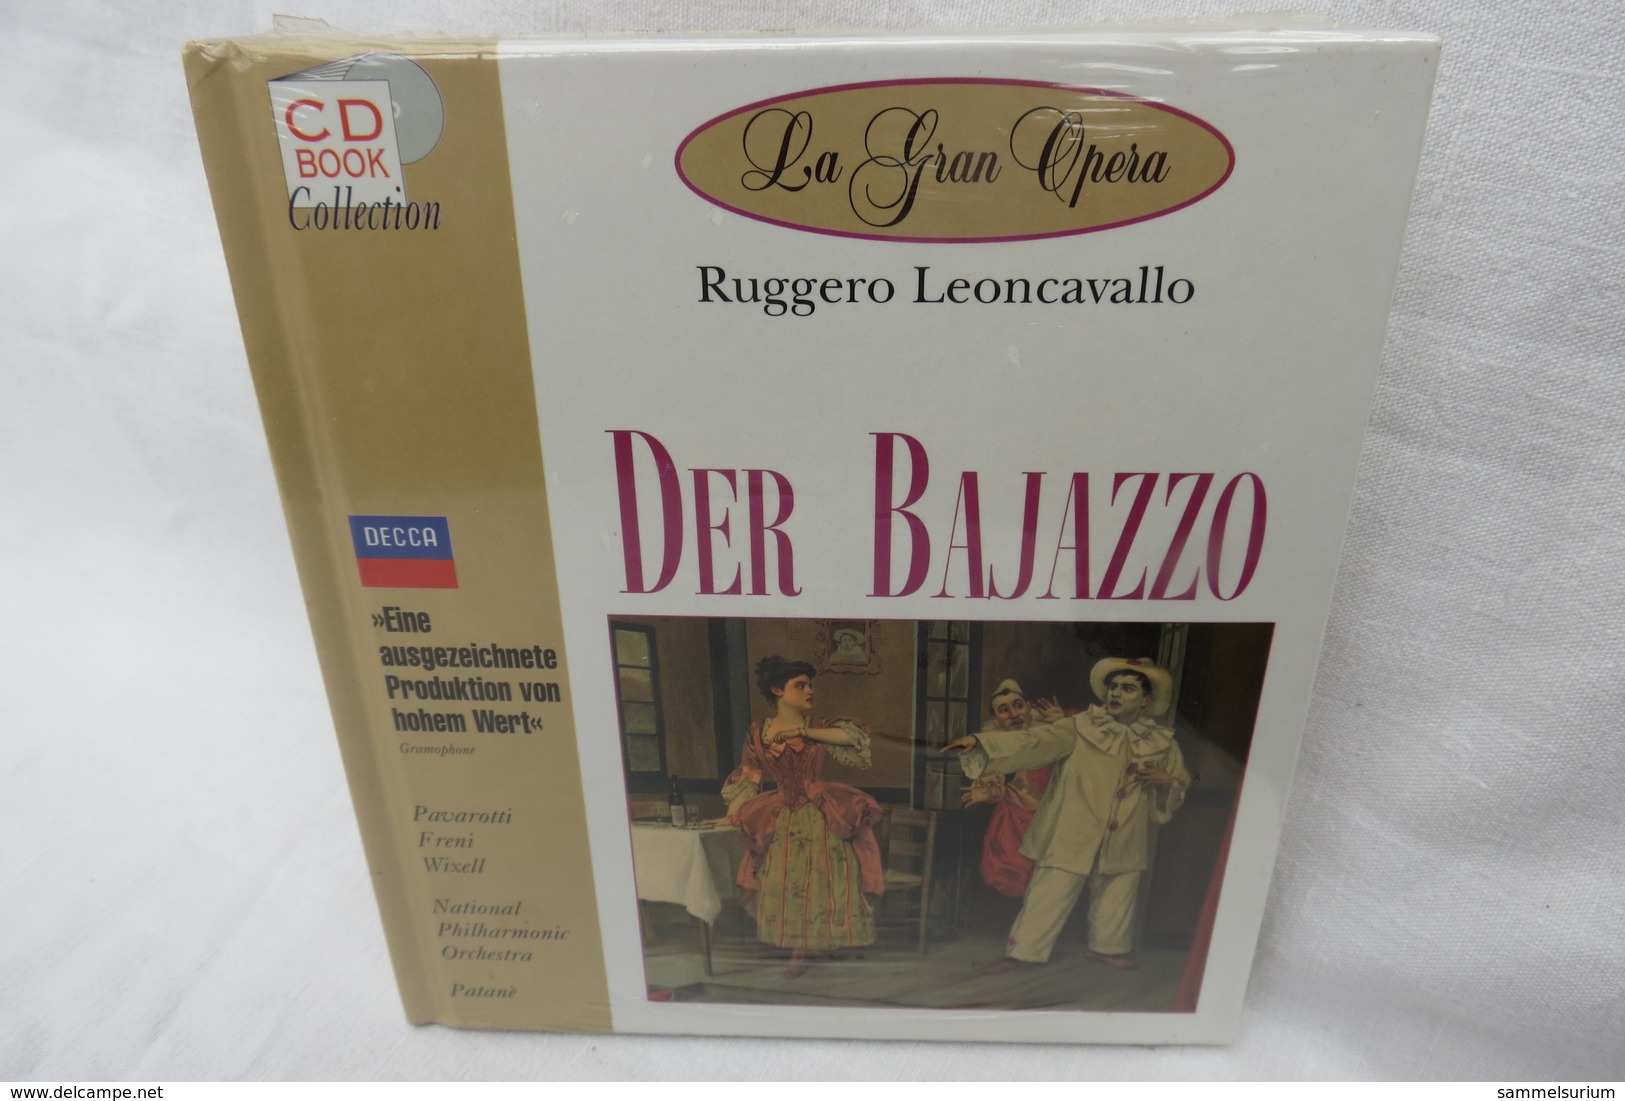 CD "Der Bajazzo / Ruggero Leoncavallo" Mit Buch Aus Der CD Book Collection (ungeöffnet, Original Eingeschweißt) - Opera / Operette